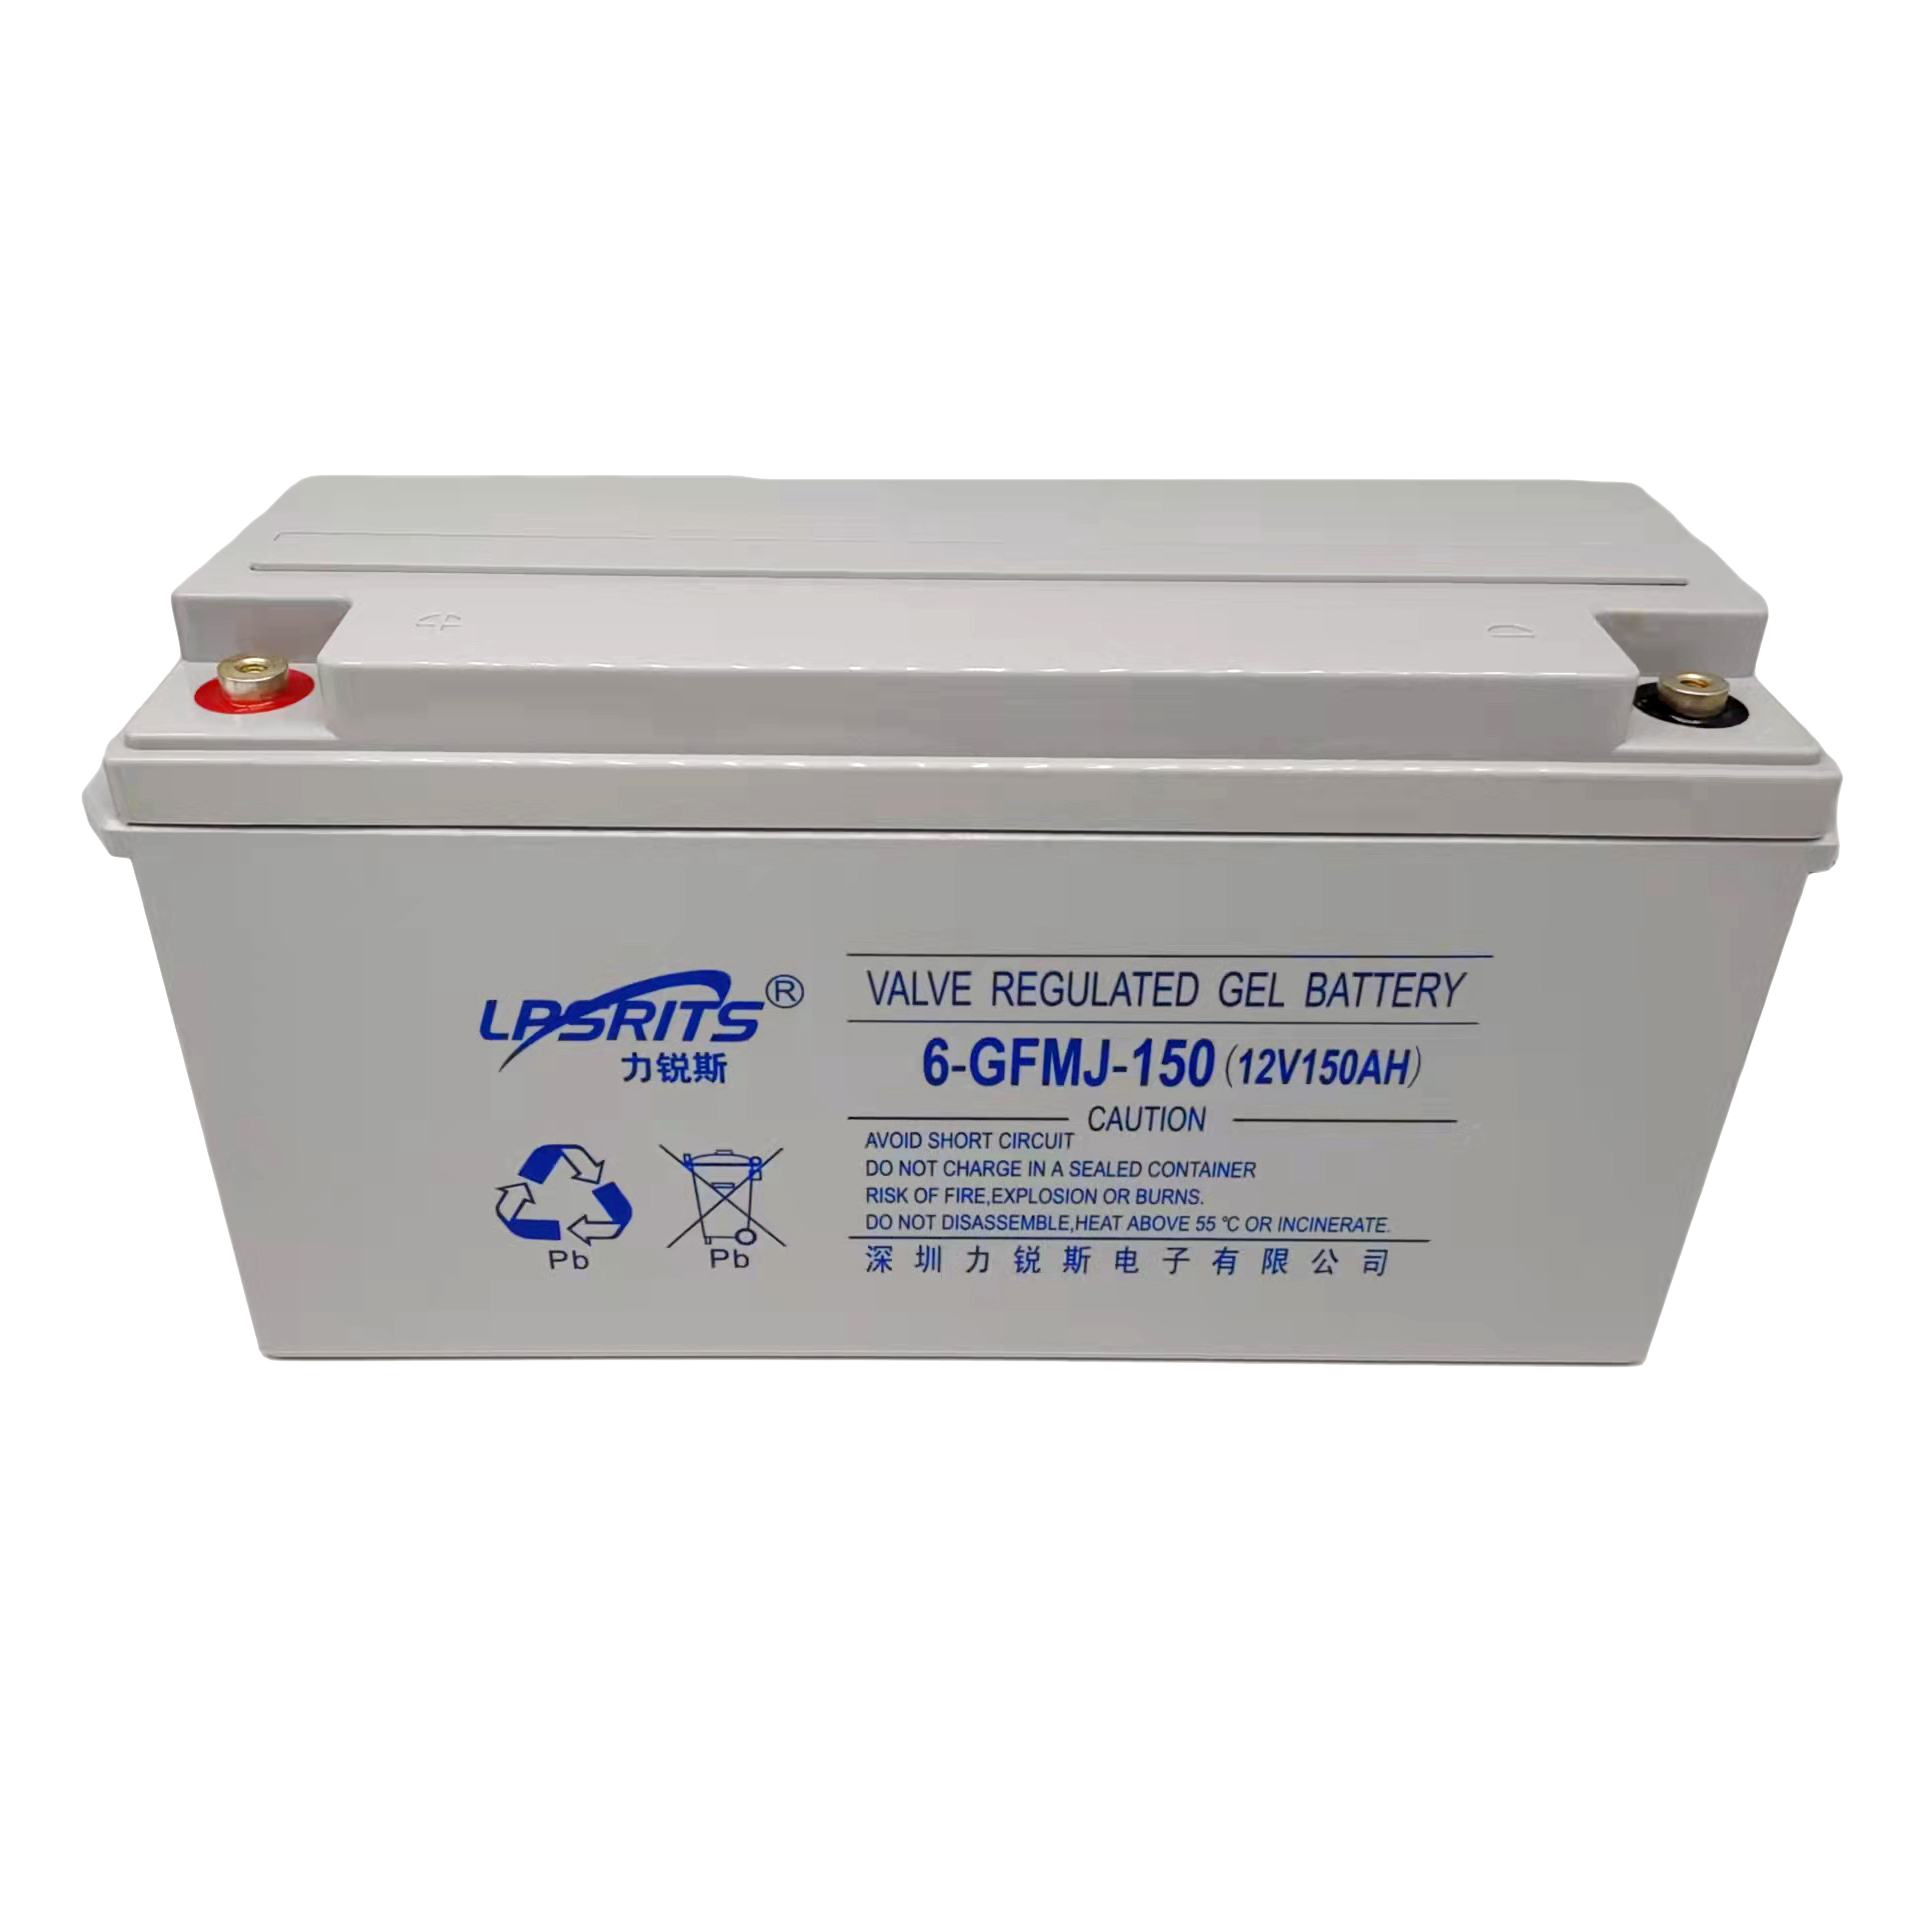 UPS电池-6-GFMJ-150 12V150Ah 阀控密封胶体蓄电池